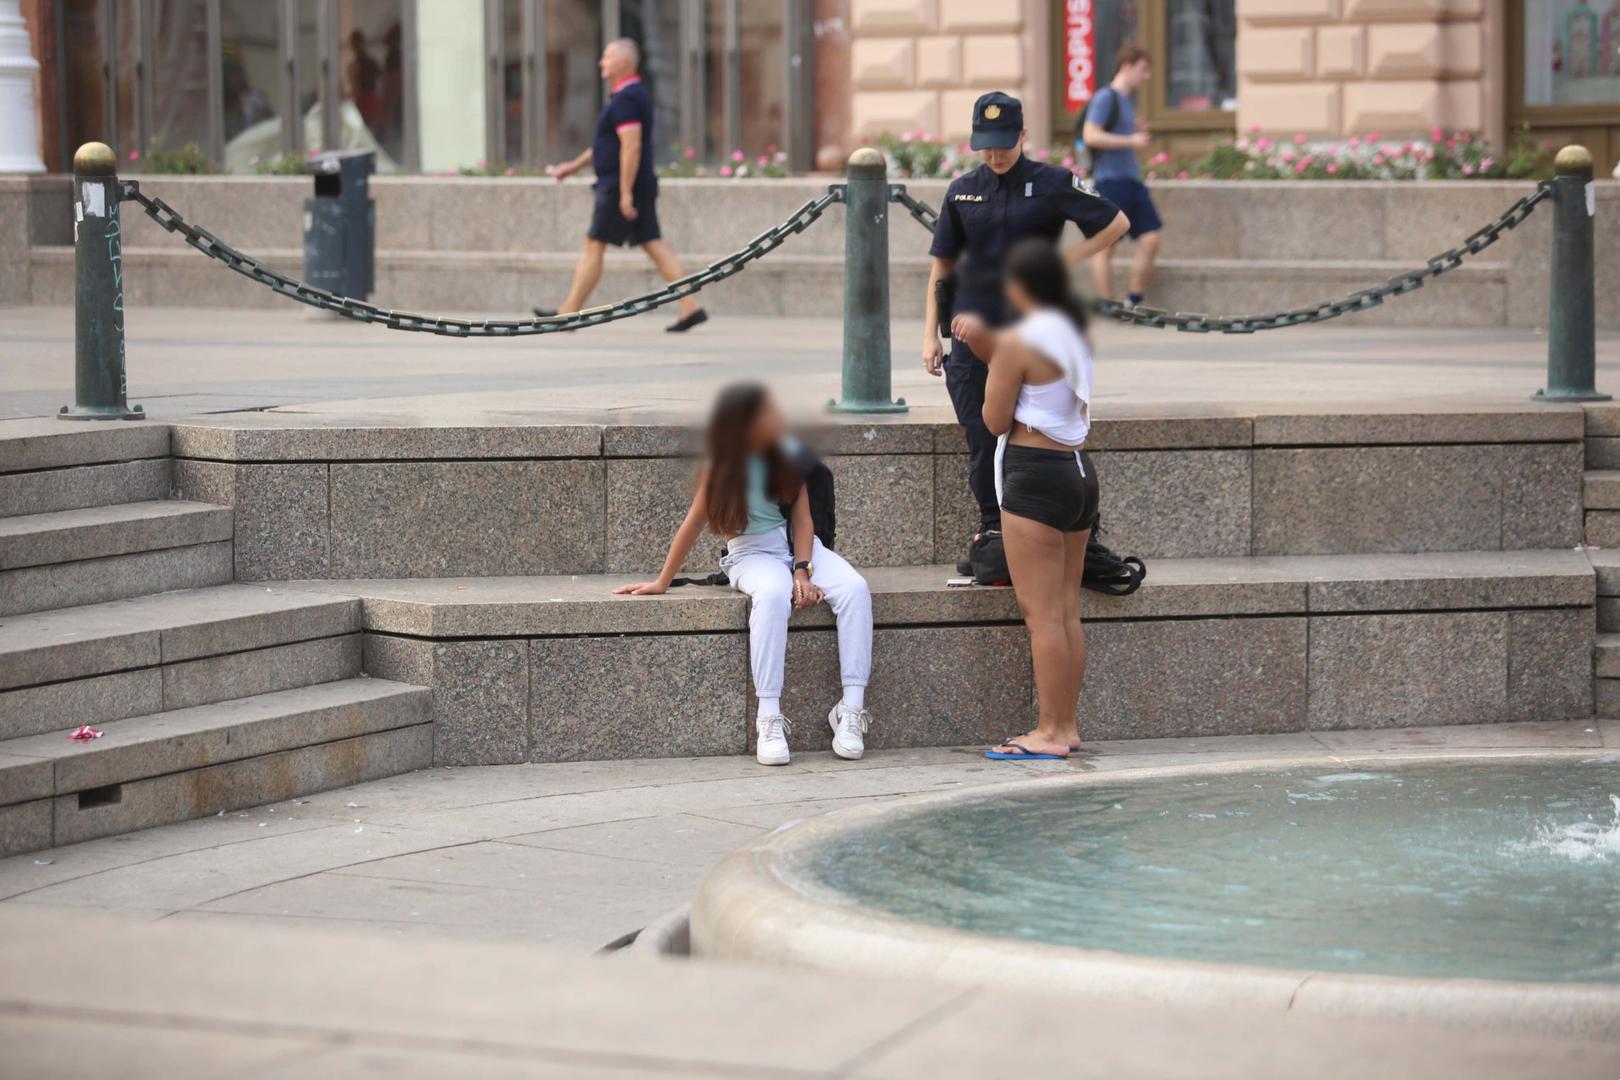 Sudeći prema fotografijama koje je snimio reporter Pixsella, policajka je upozorila djevojku da fontana nije bazen te da se u njoj ne smije kupati. 